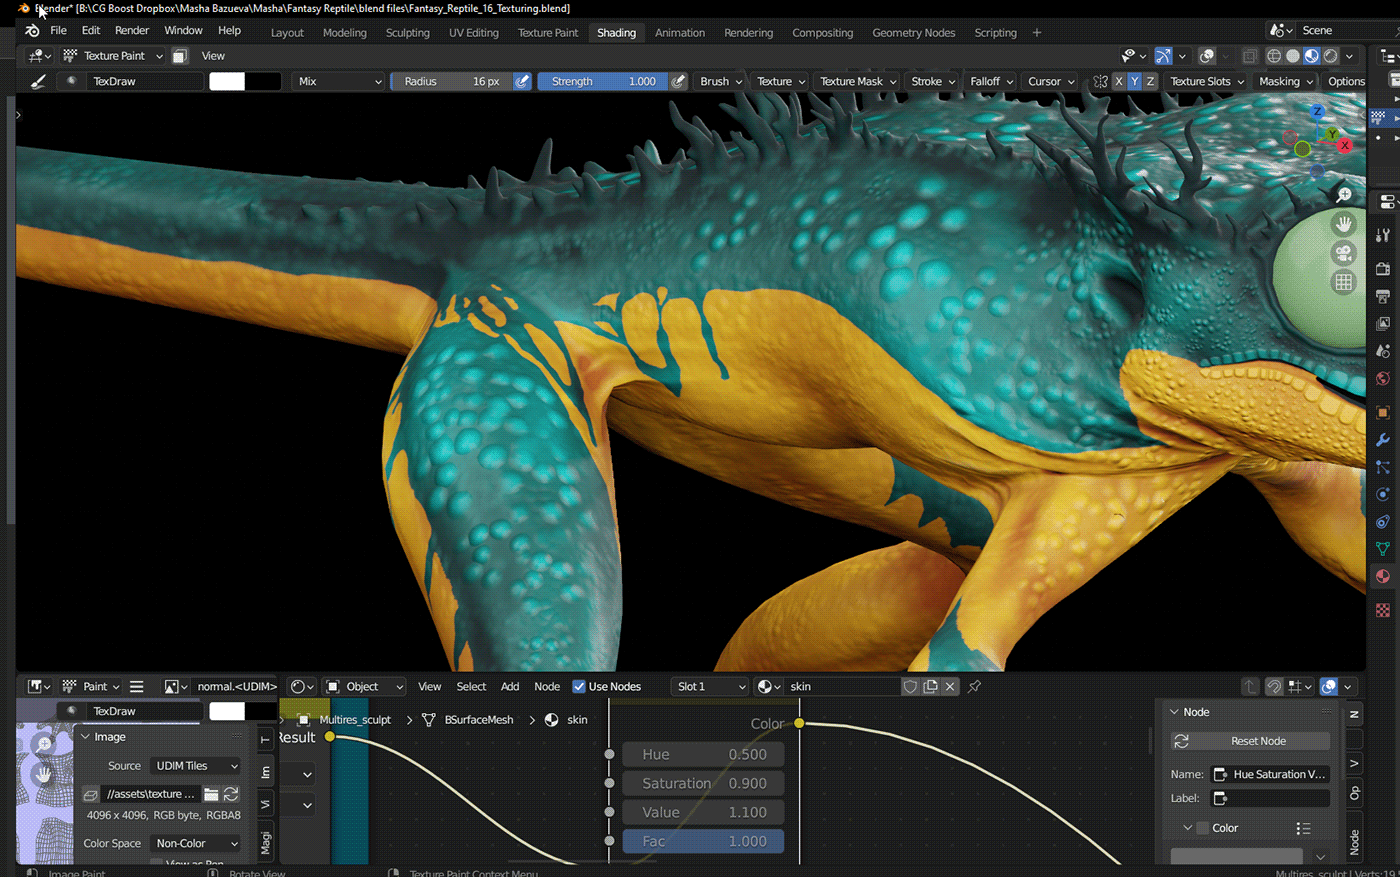 animal reptile lizard artwork 3D Render blender3d 3d modeling